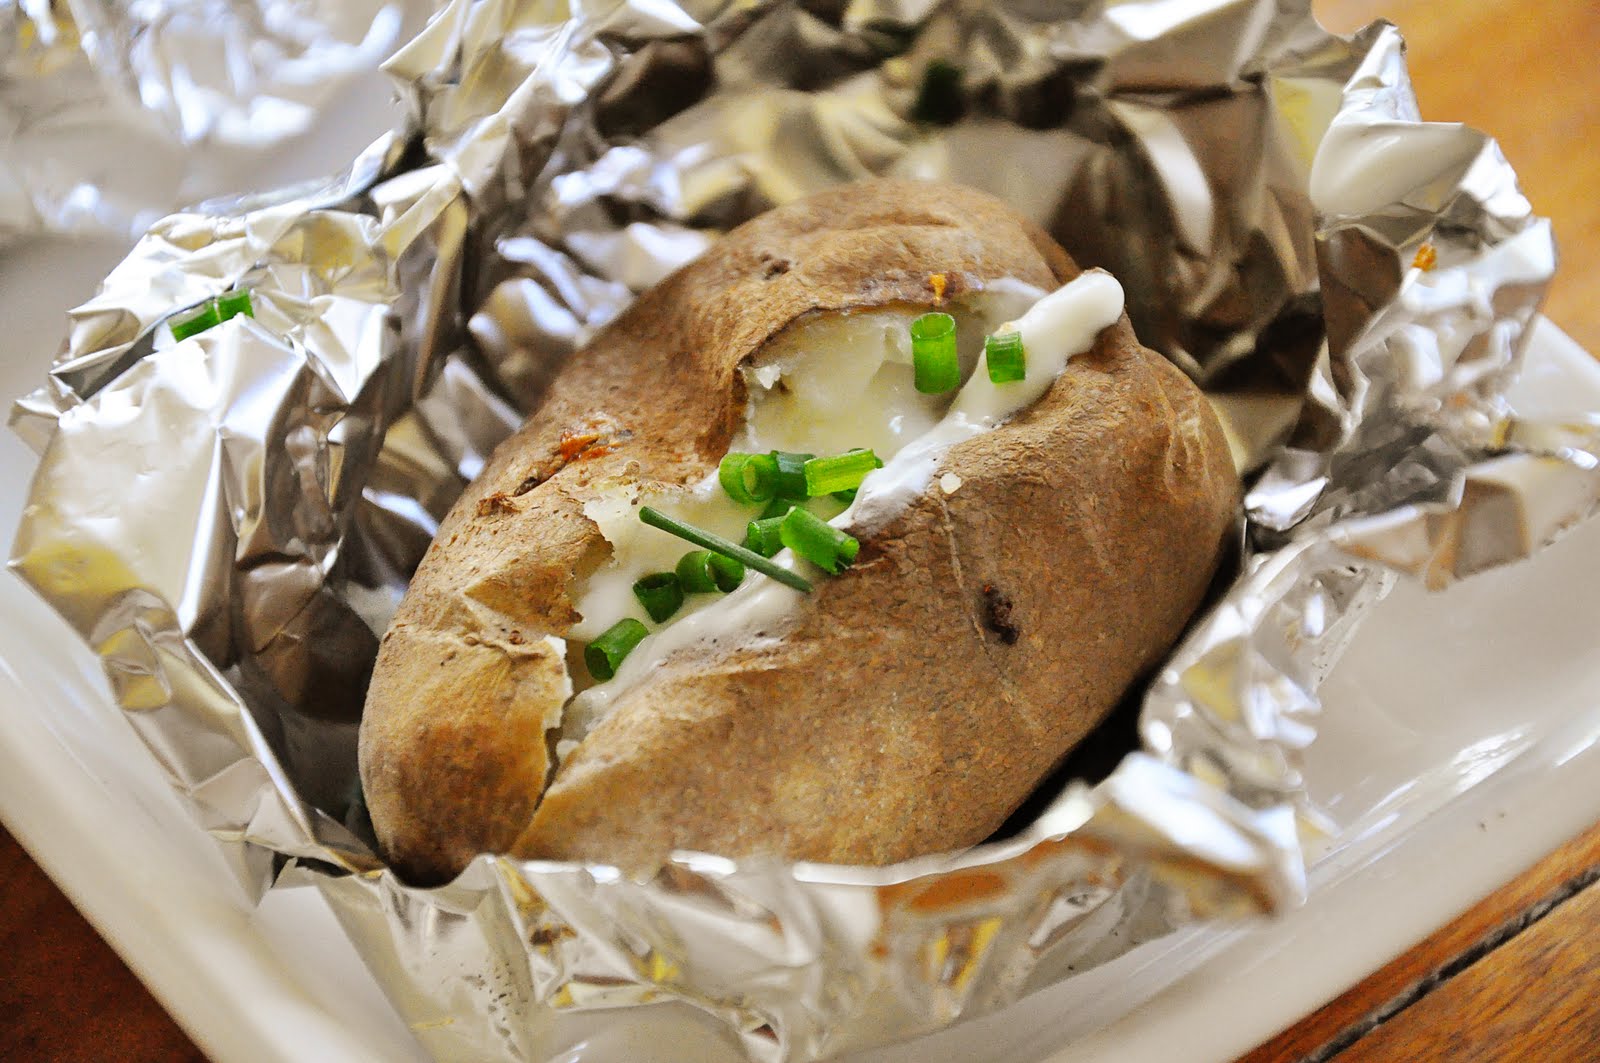 Картошка с в фольге в духовке рецепт с фото пошагово в